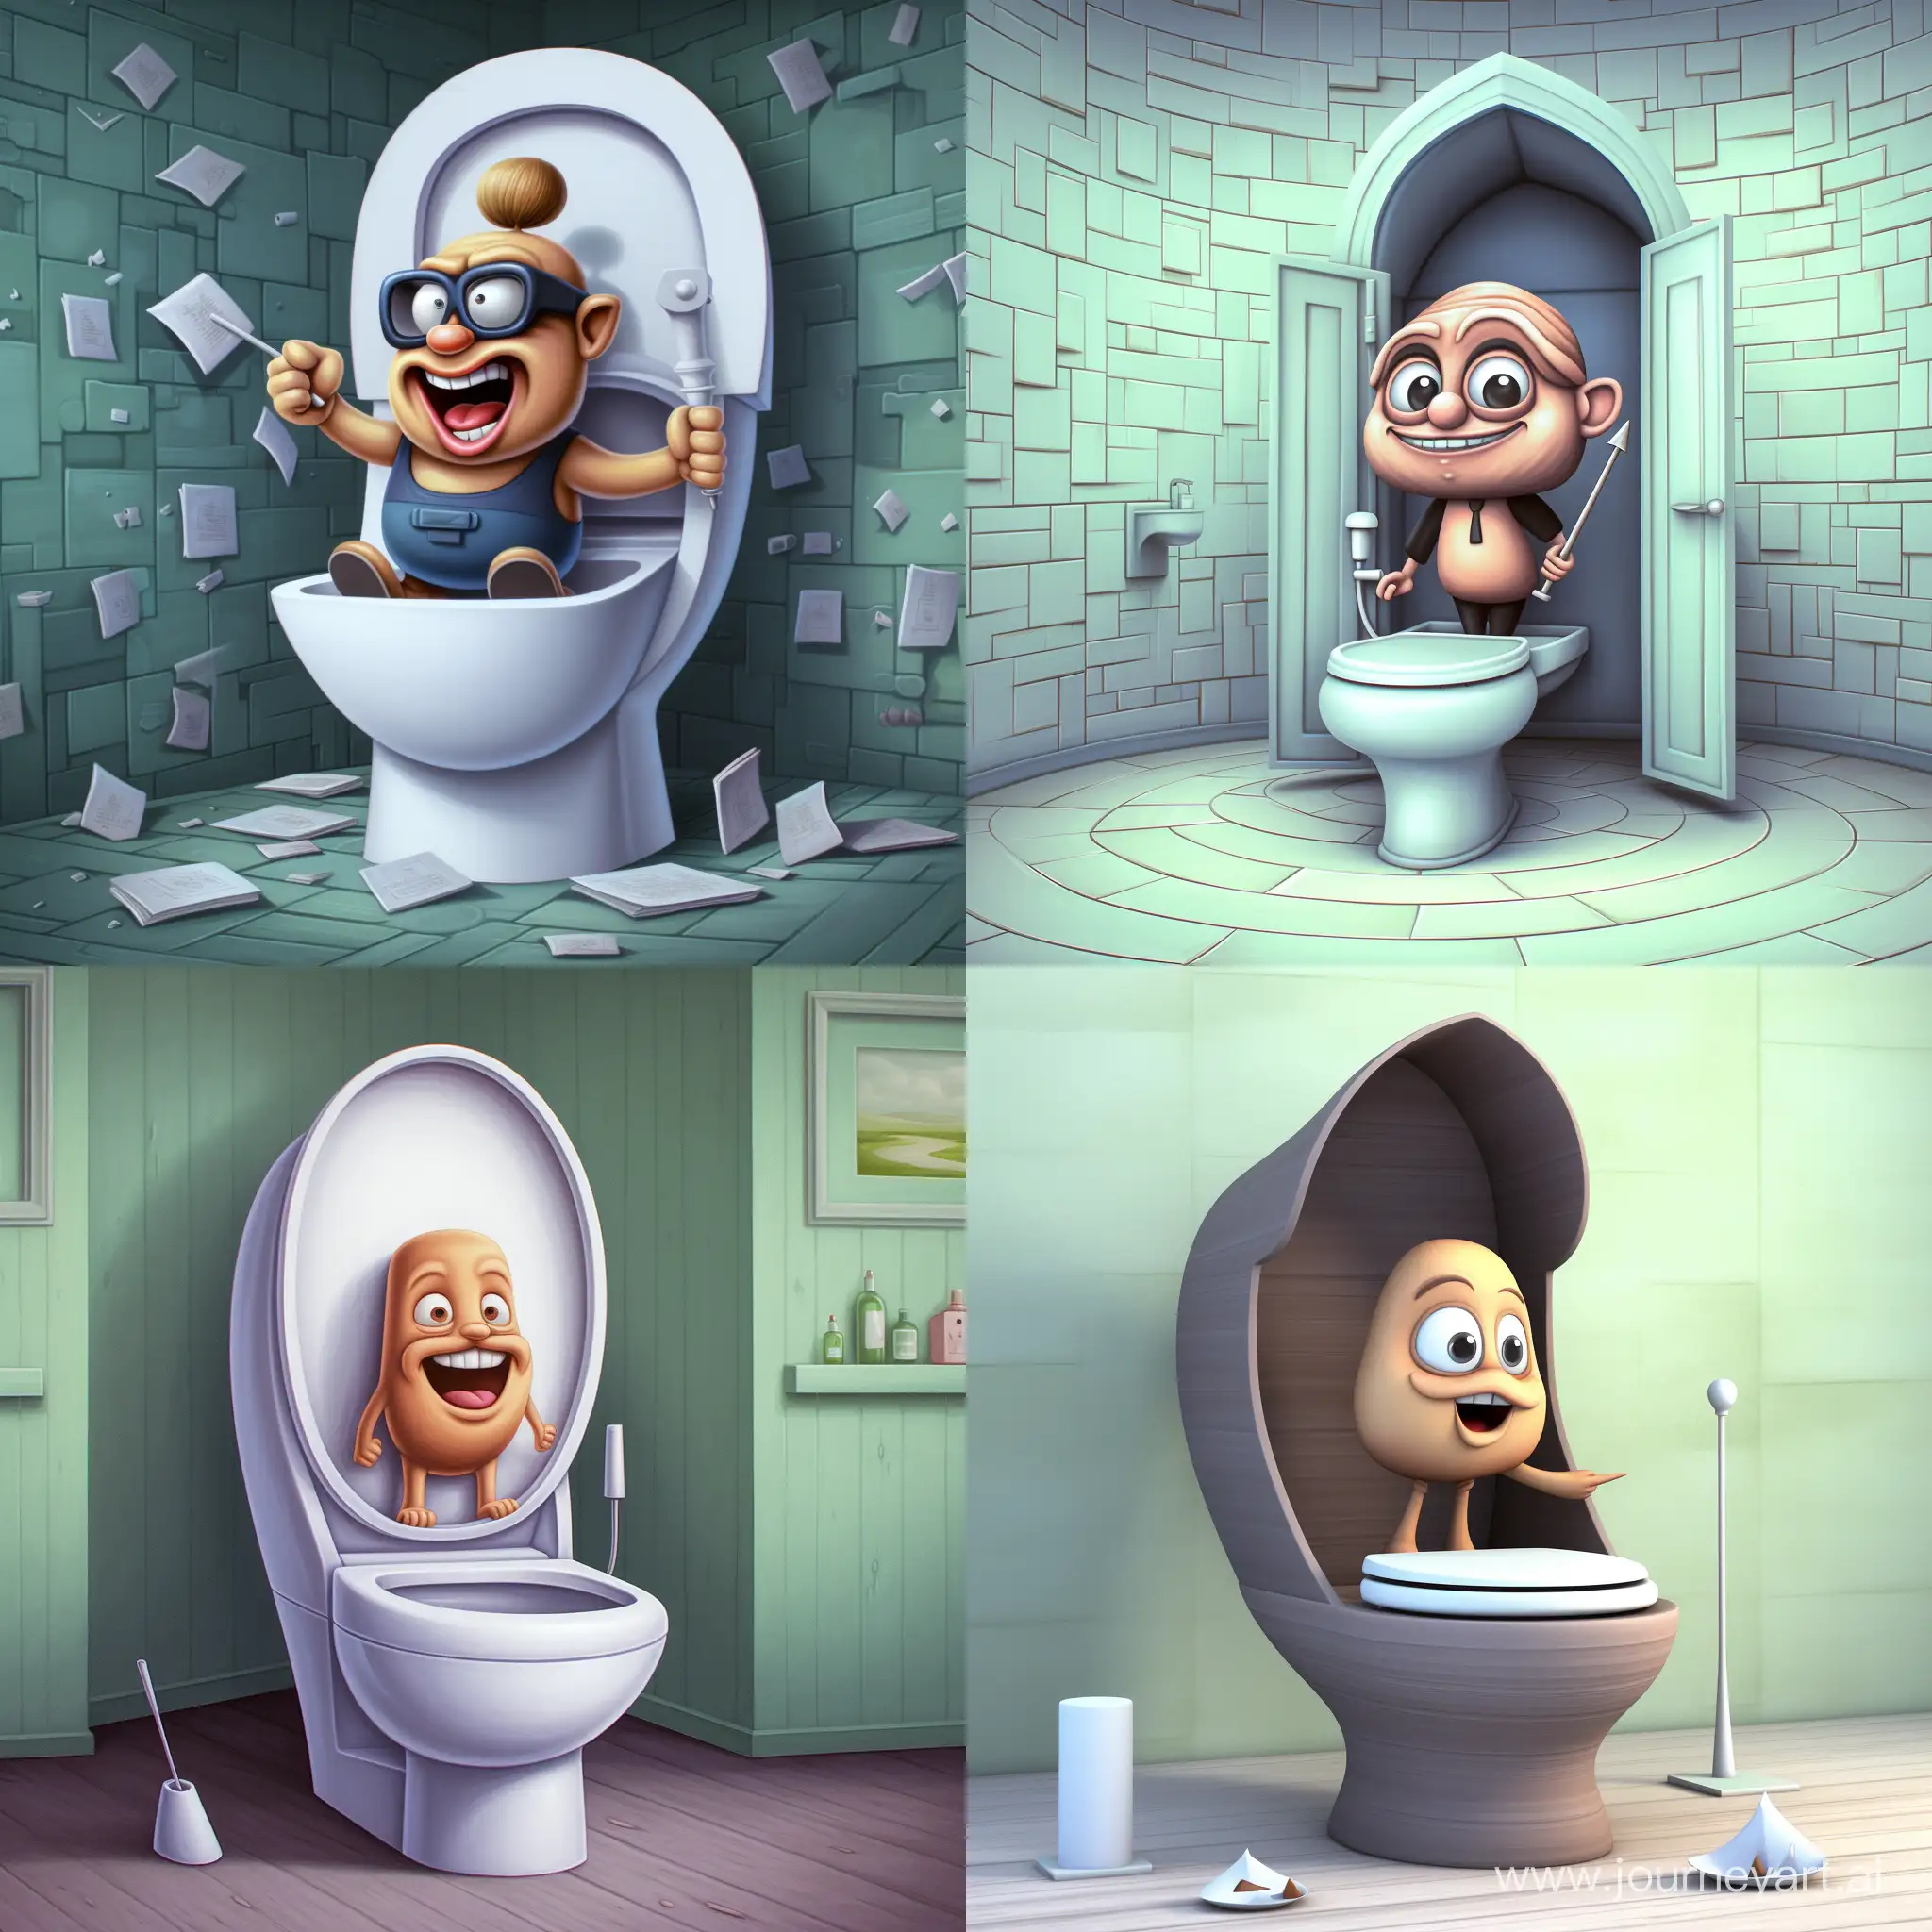 Spongebob-Taking-a-Break-on-the-Toilet